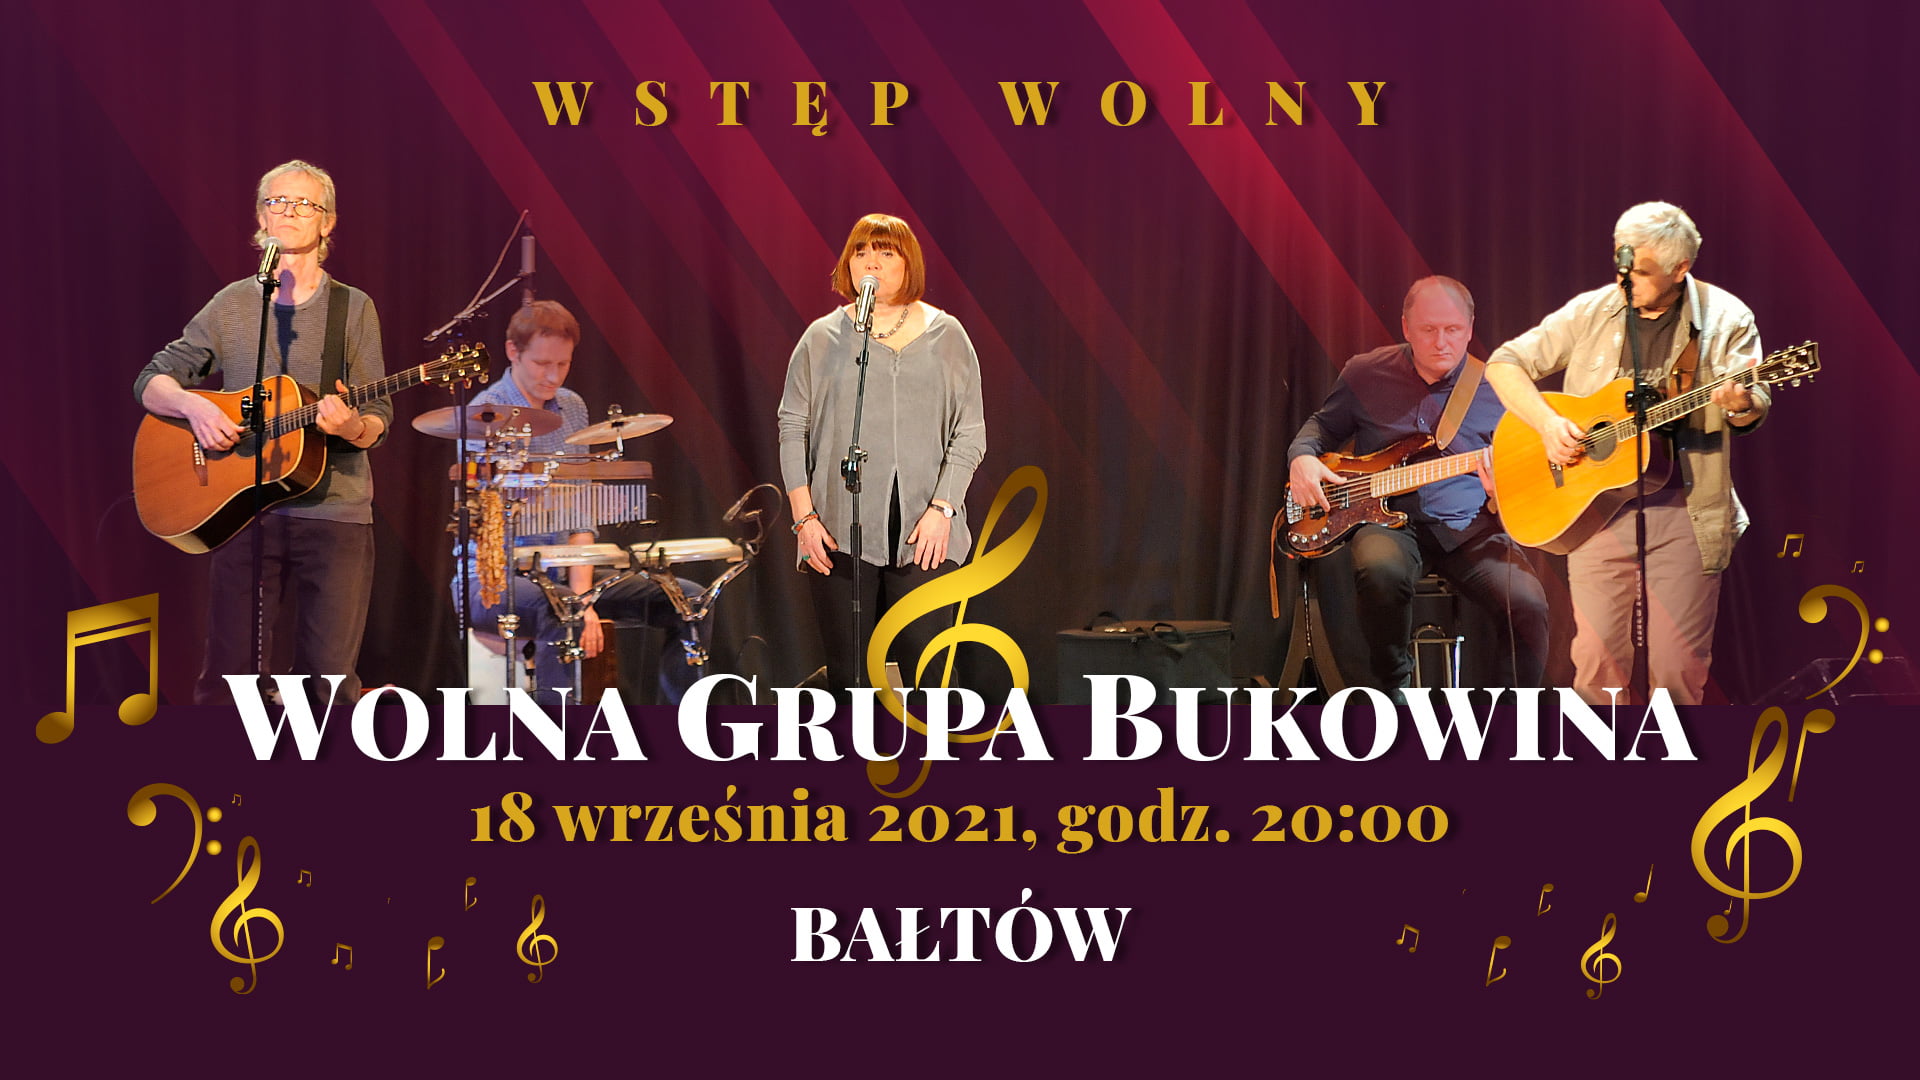 Wolna Grupa Bukowina Wallpapers